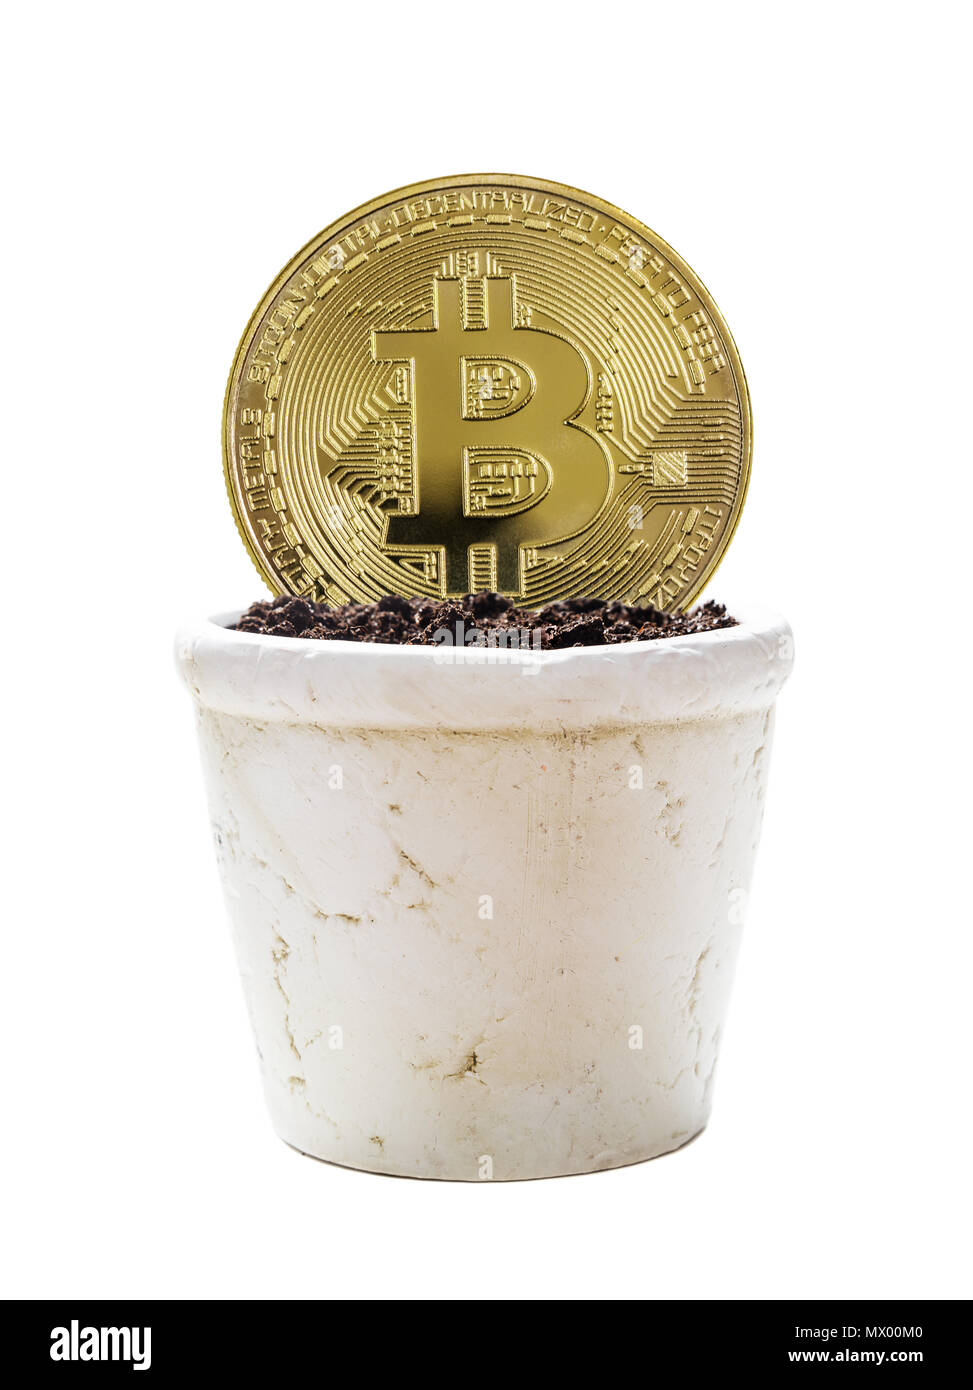 Symbolische goldene Medaille der bitcoin crypto Währung, neue digitale Geld in cyber Welt, ist in weiß Keramik Blumentopf mit Erde, isoliert auf weißem backgro Stockfoto